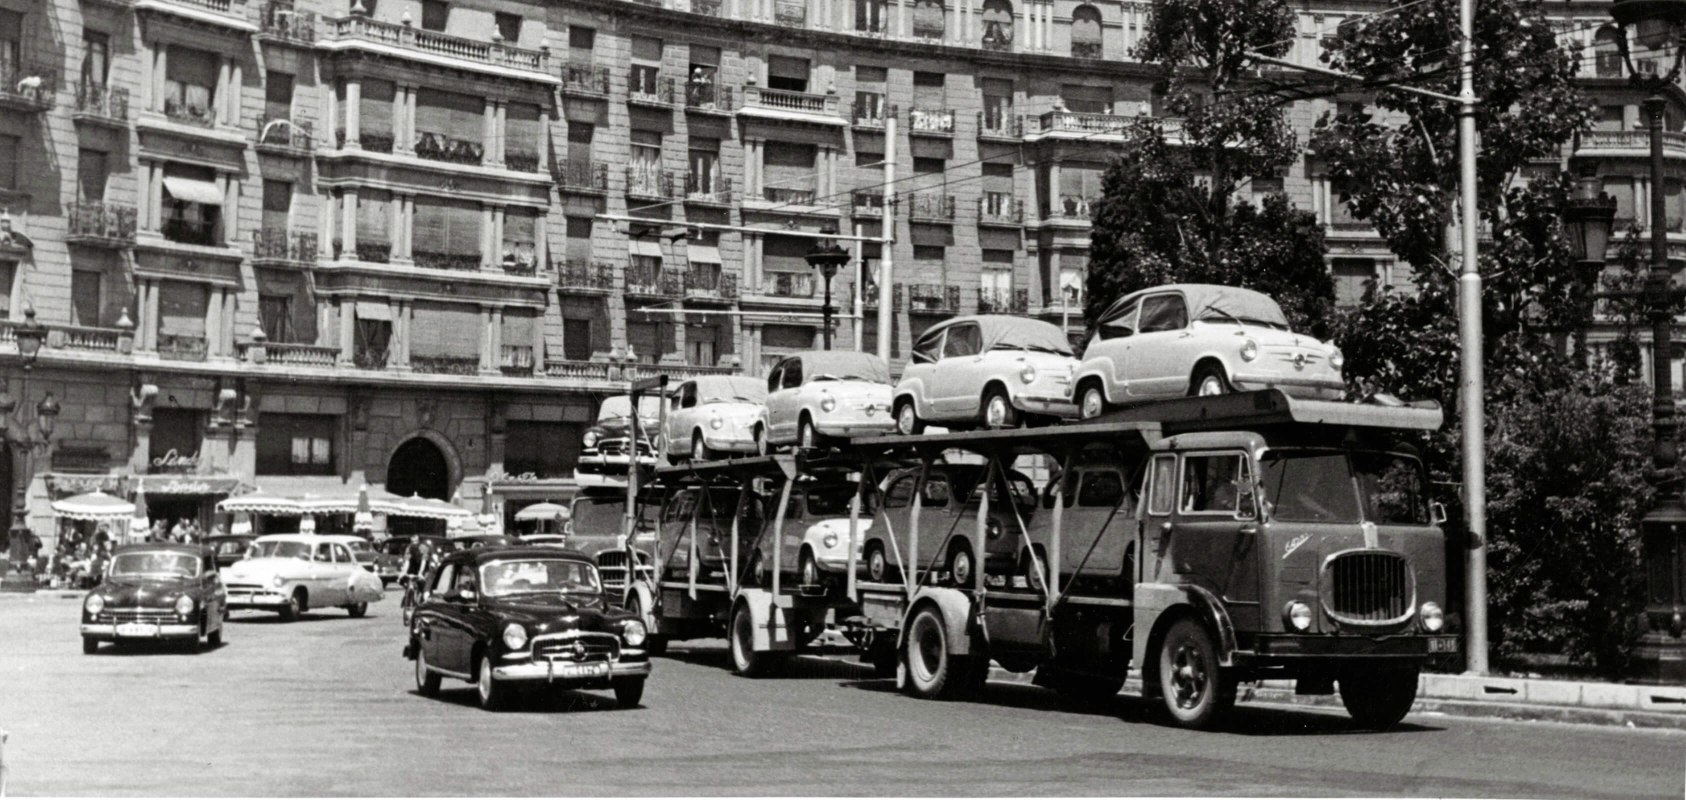 SEAT histoire de la marque 1950s - SEAT 600 sur un camion